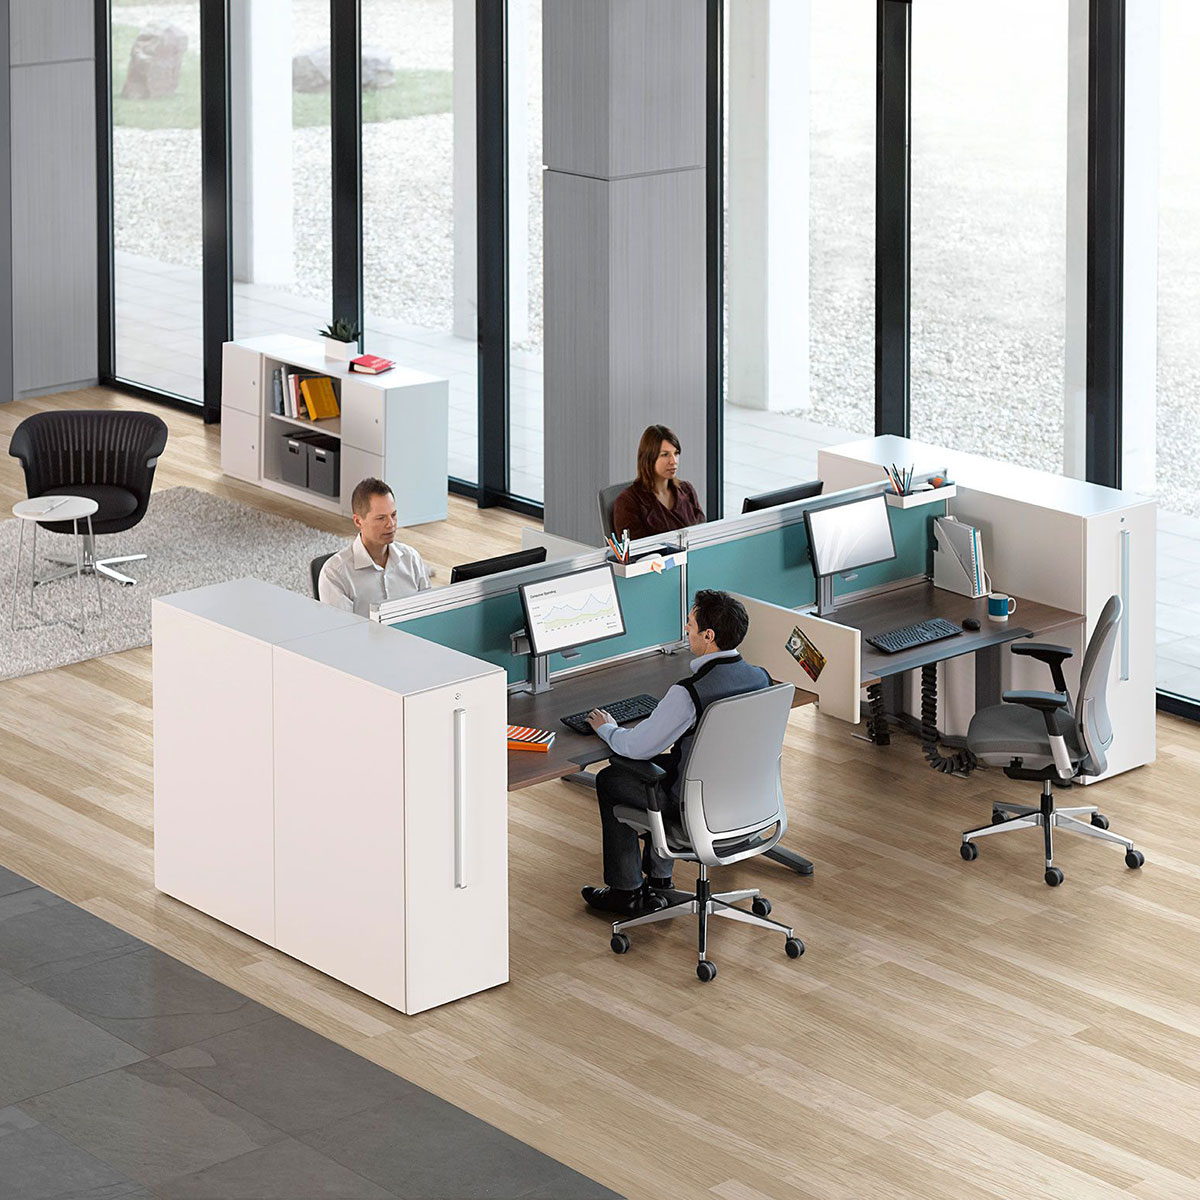 Steelcase OLOGY elektrisch höhenverstellbarer Schreibtisch, 720 - 1.200 mm Höhe